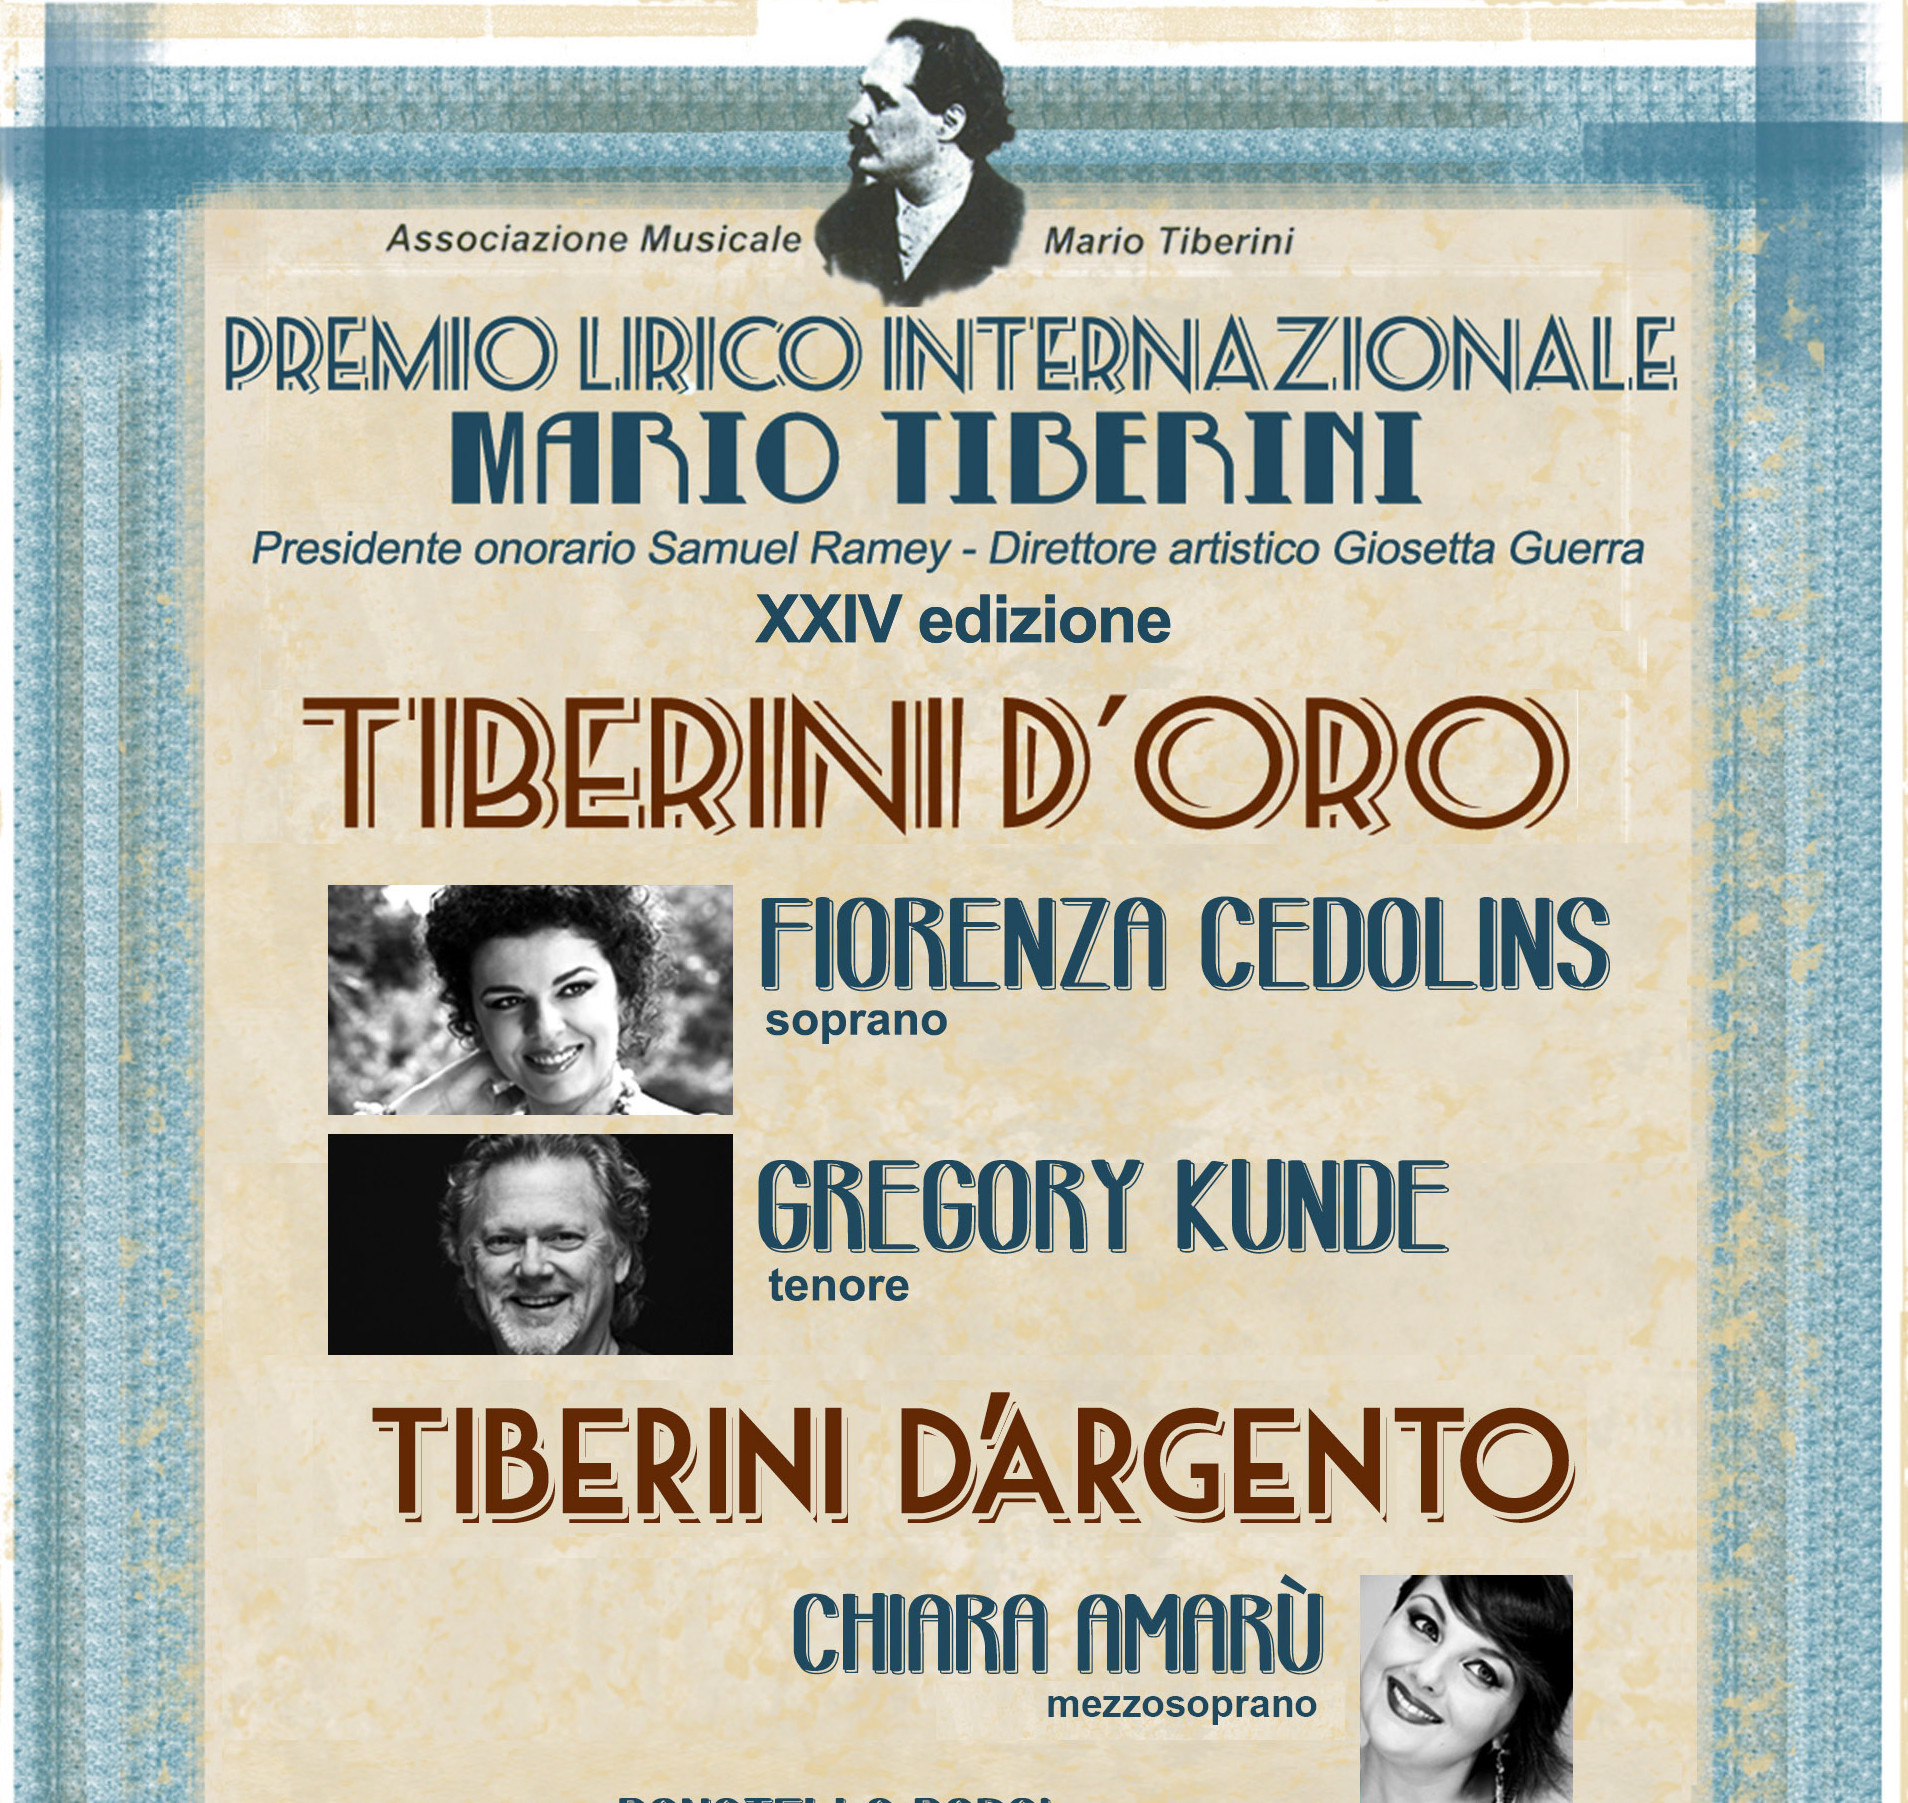 XXIV edizione del Premio Lirico Internazionale Mario Tiberini